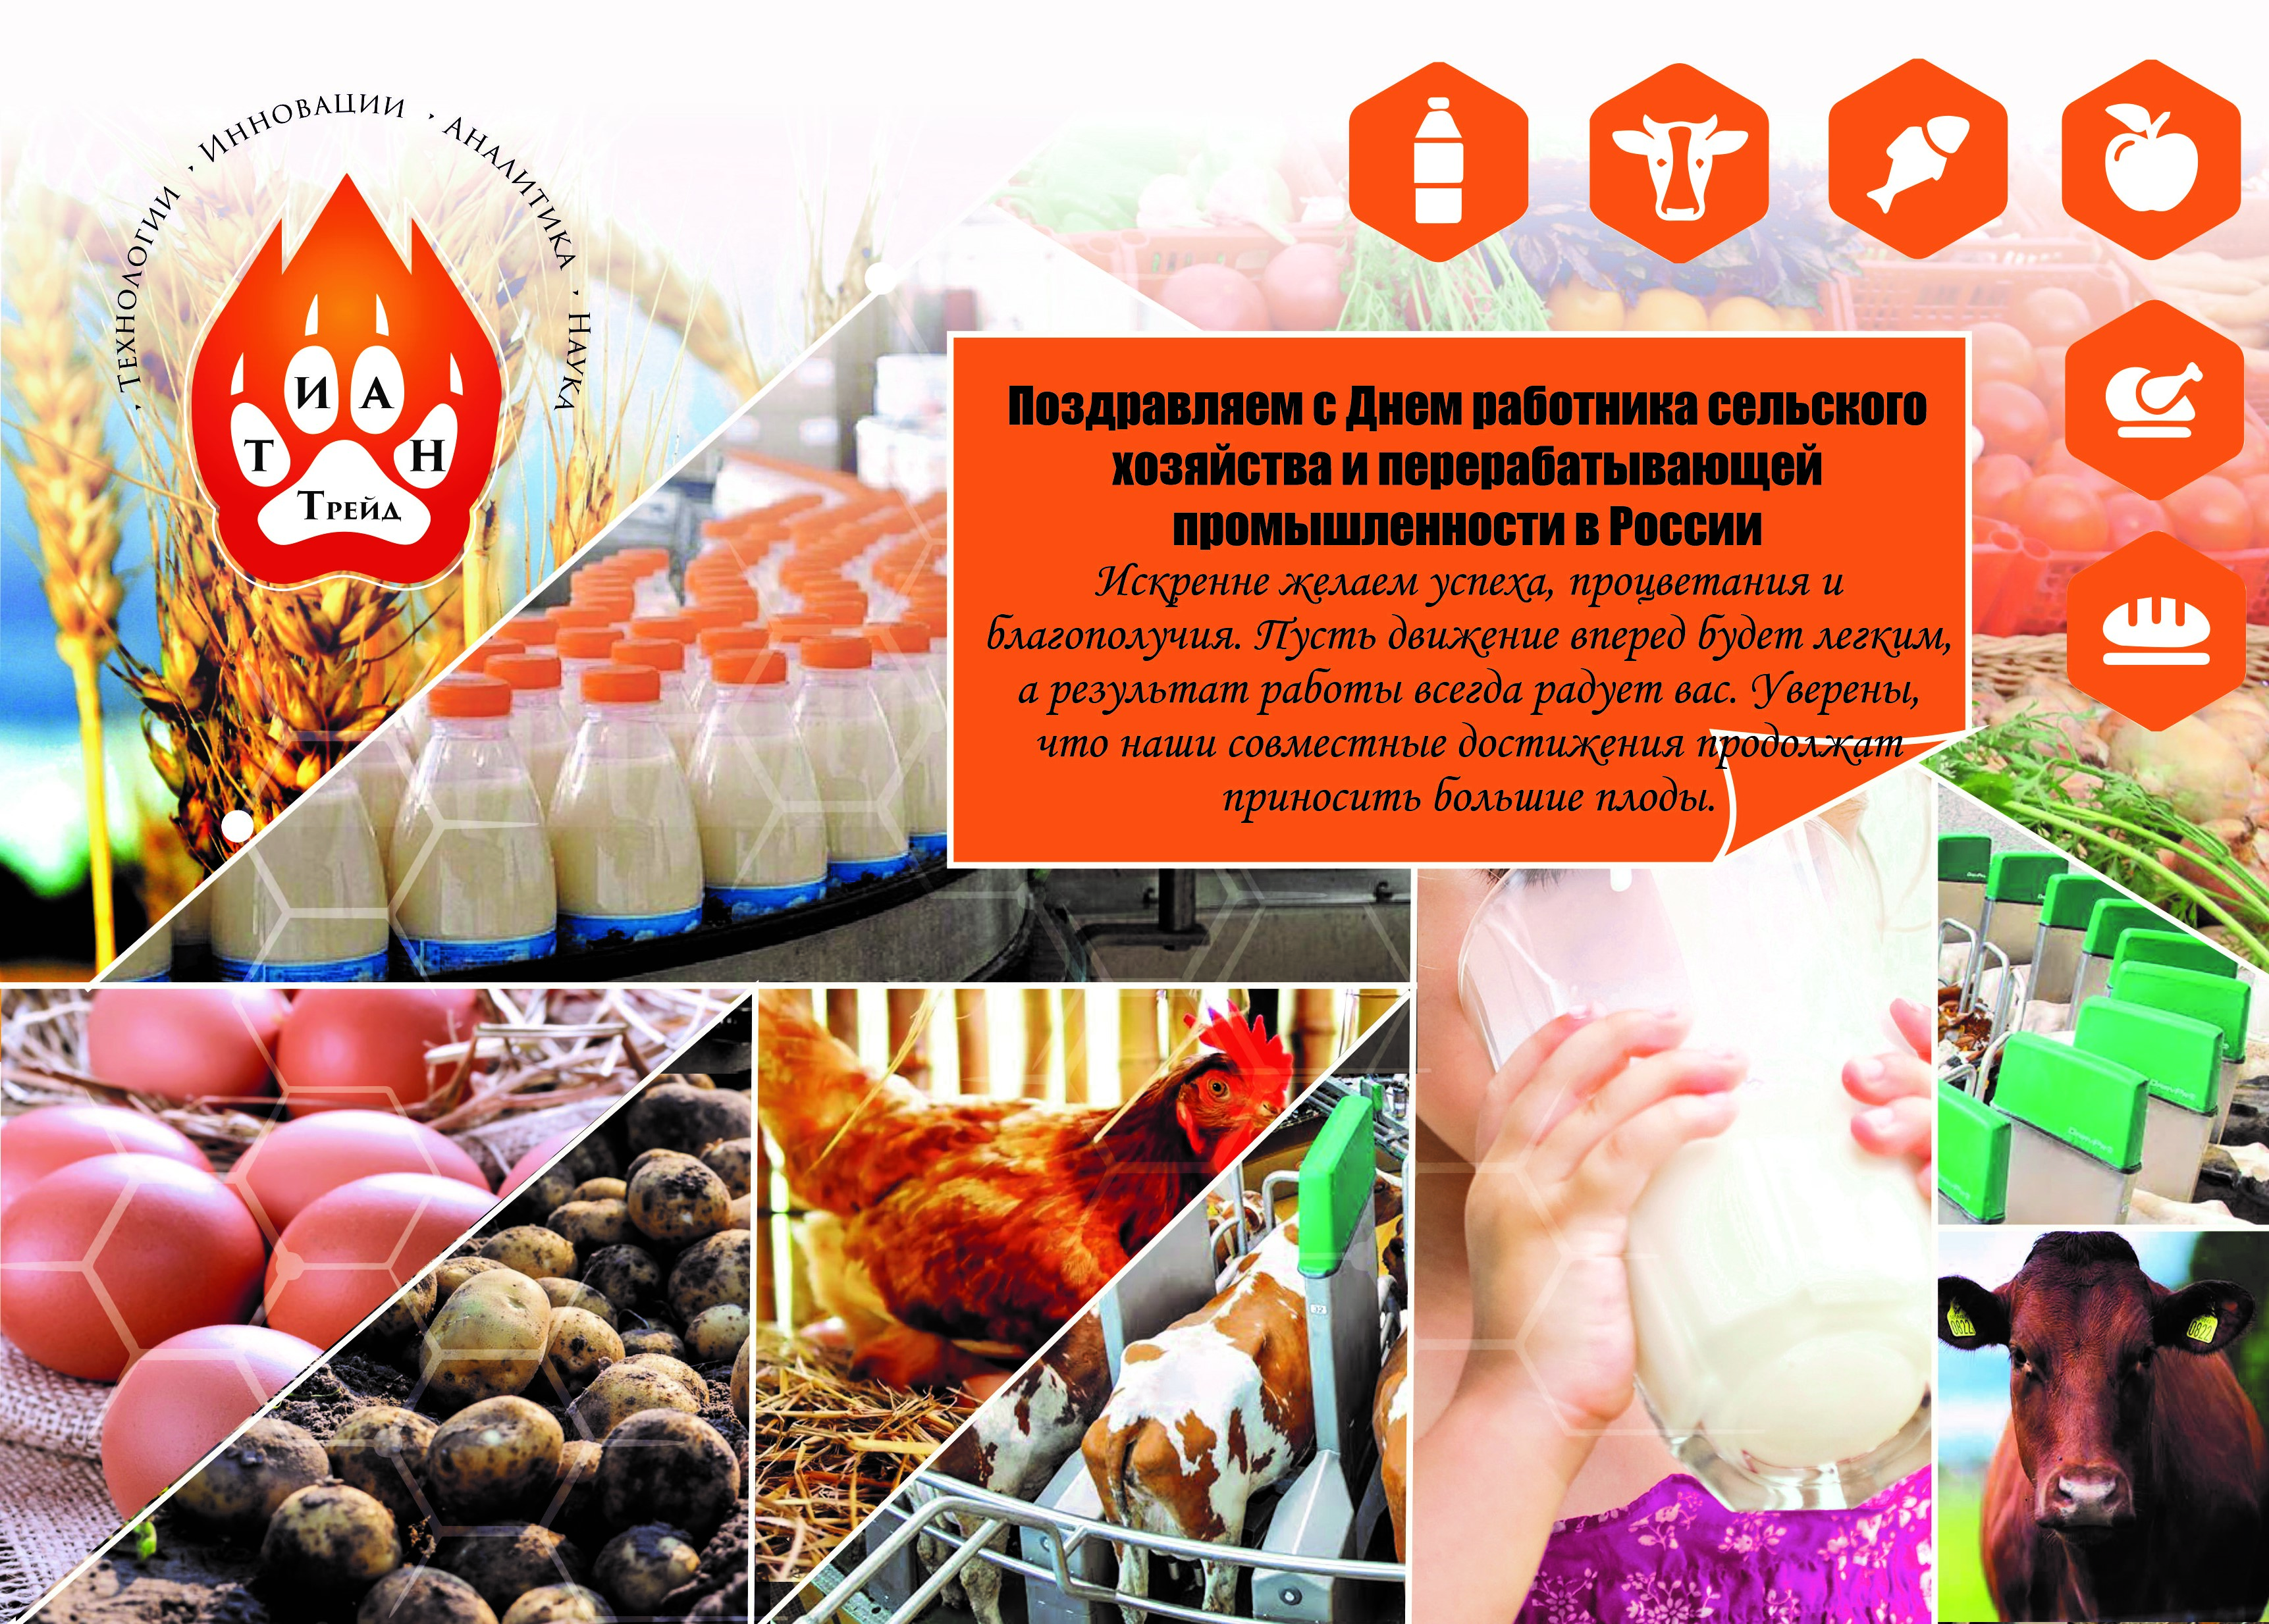 9 октября День работника сельского хозяйства и перерабатывающей промышленности в России